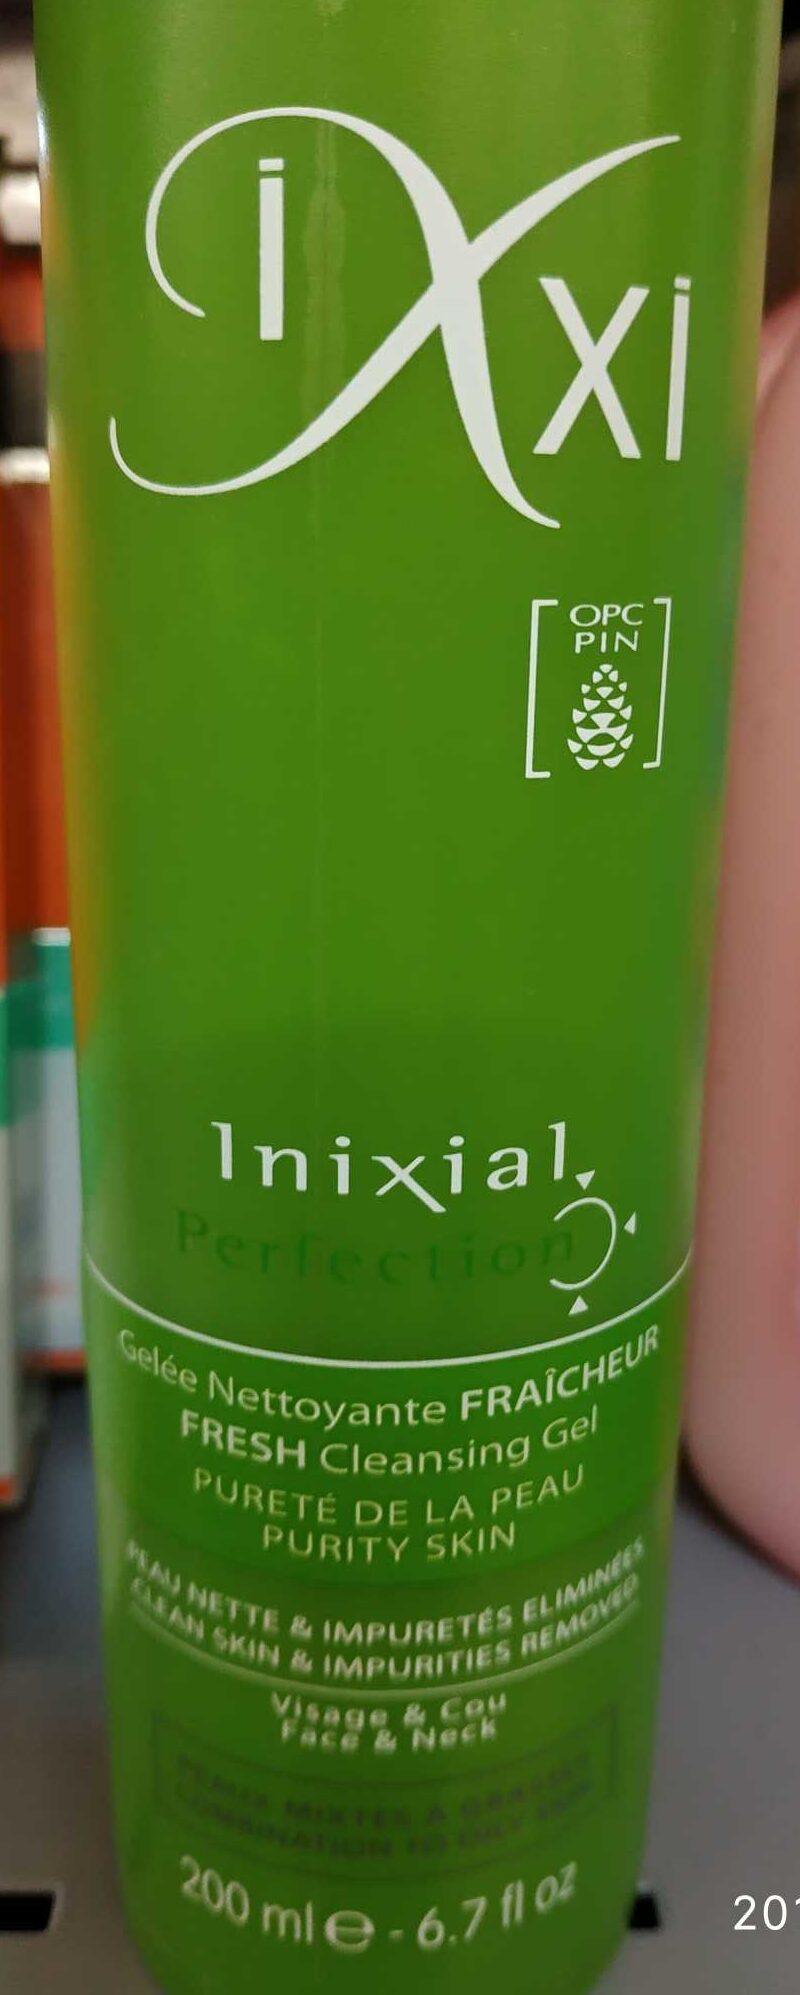 Inixial - Product - fr